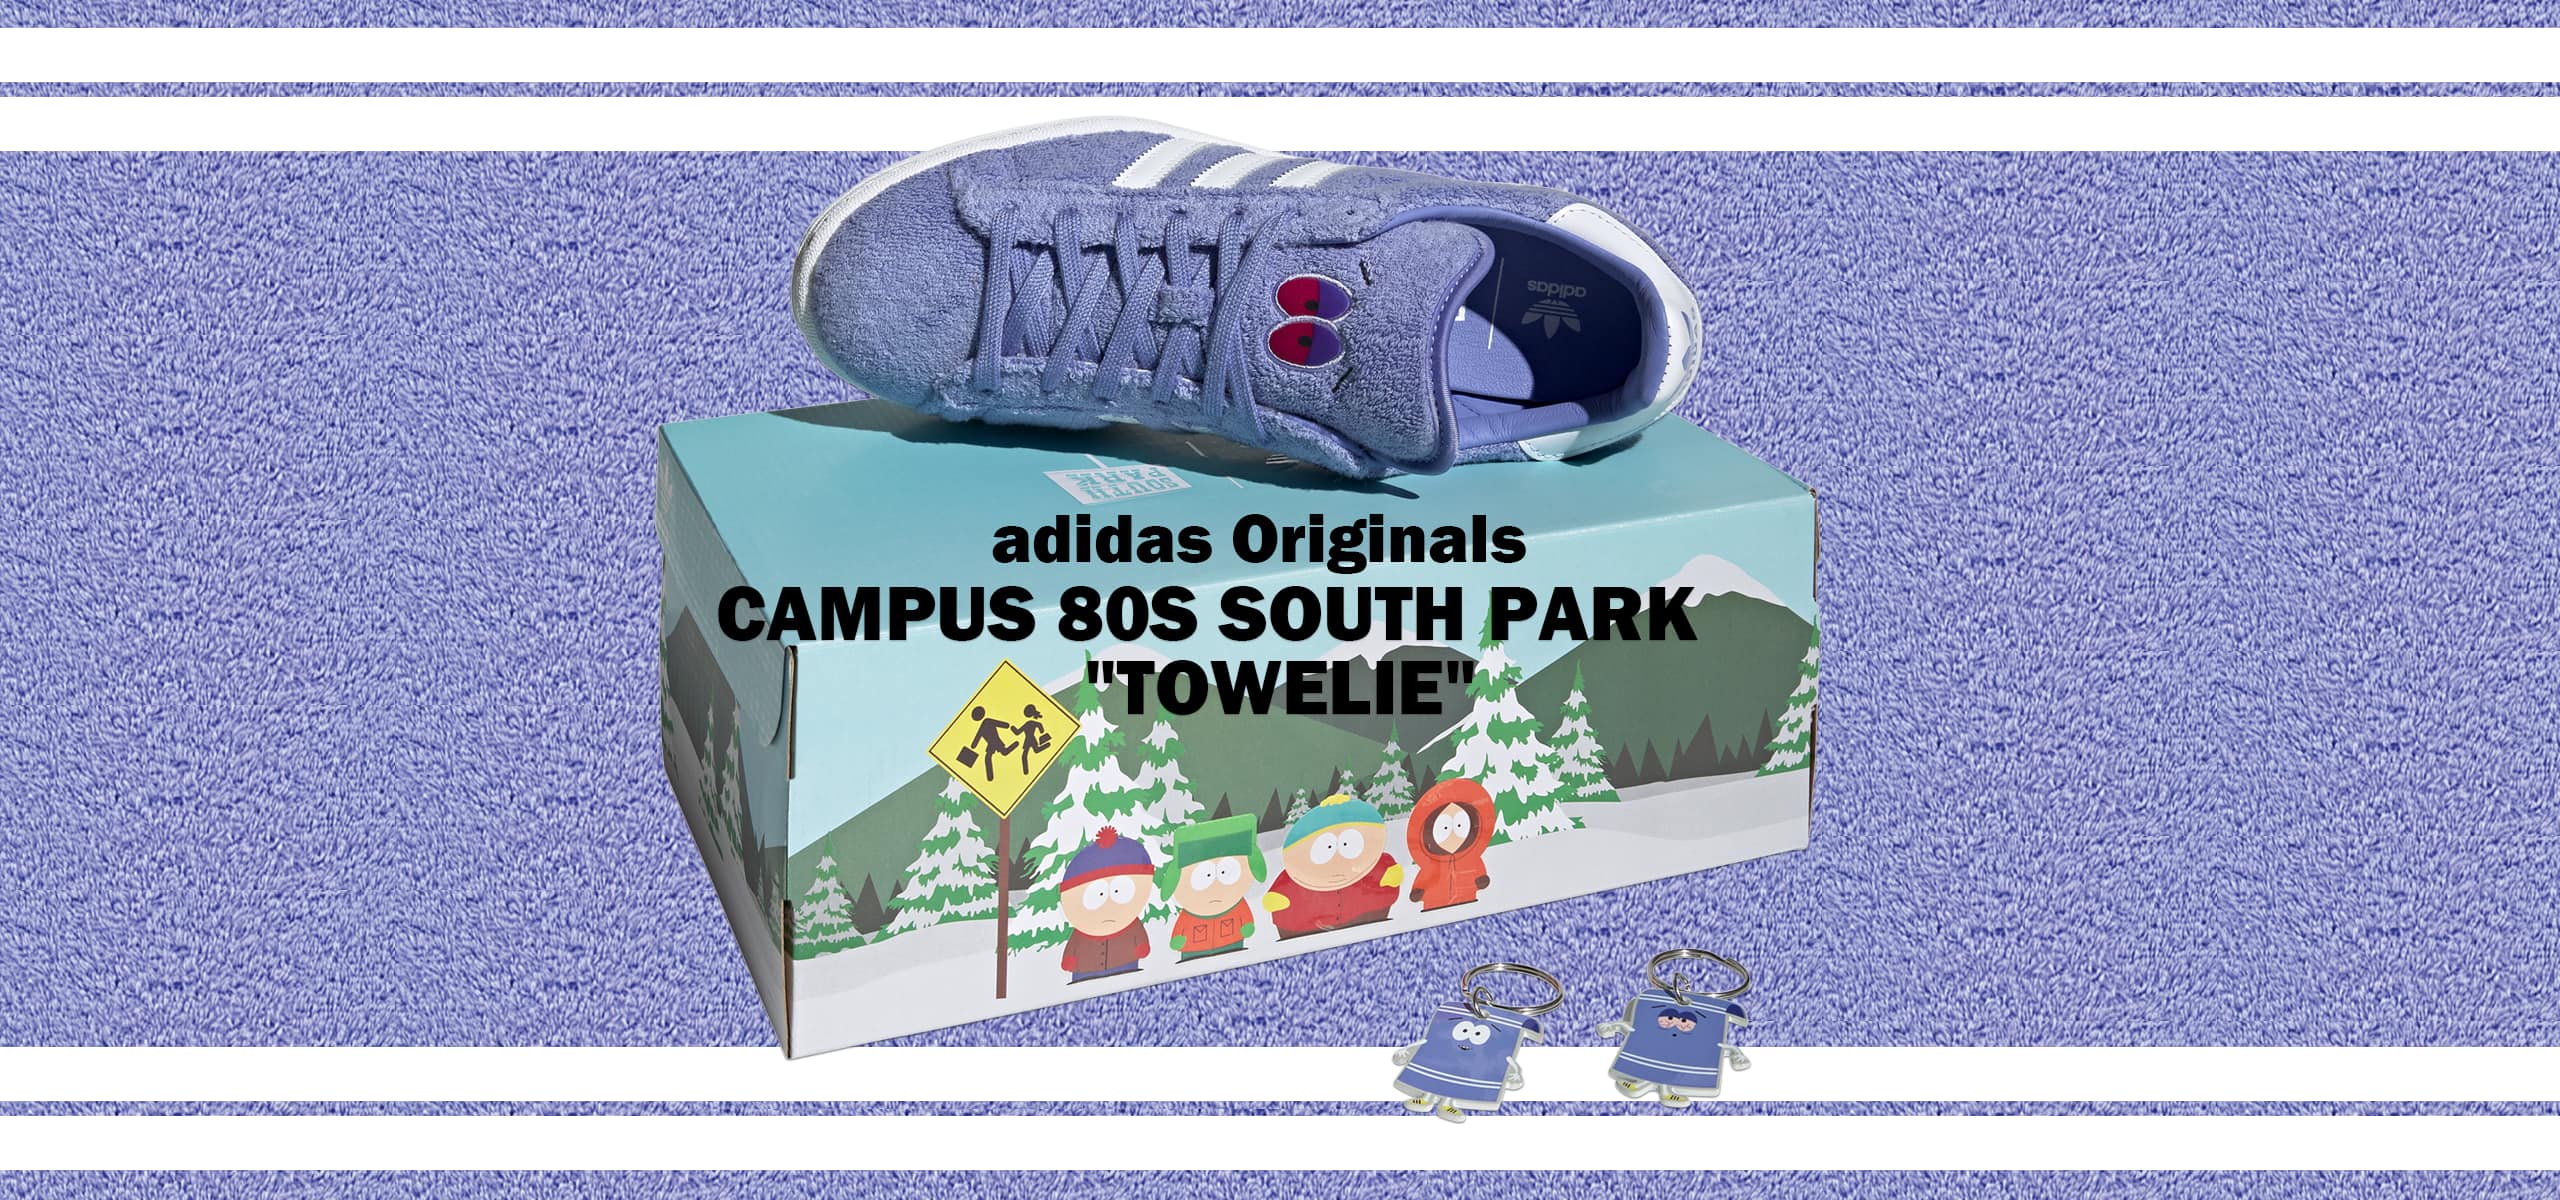 adidas-campus-towelie